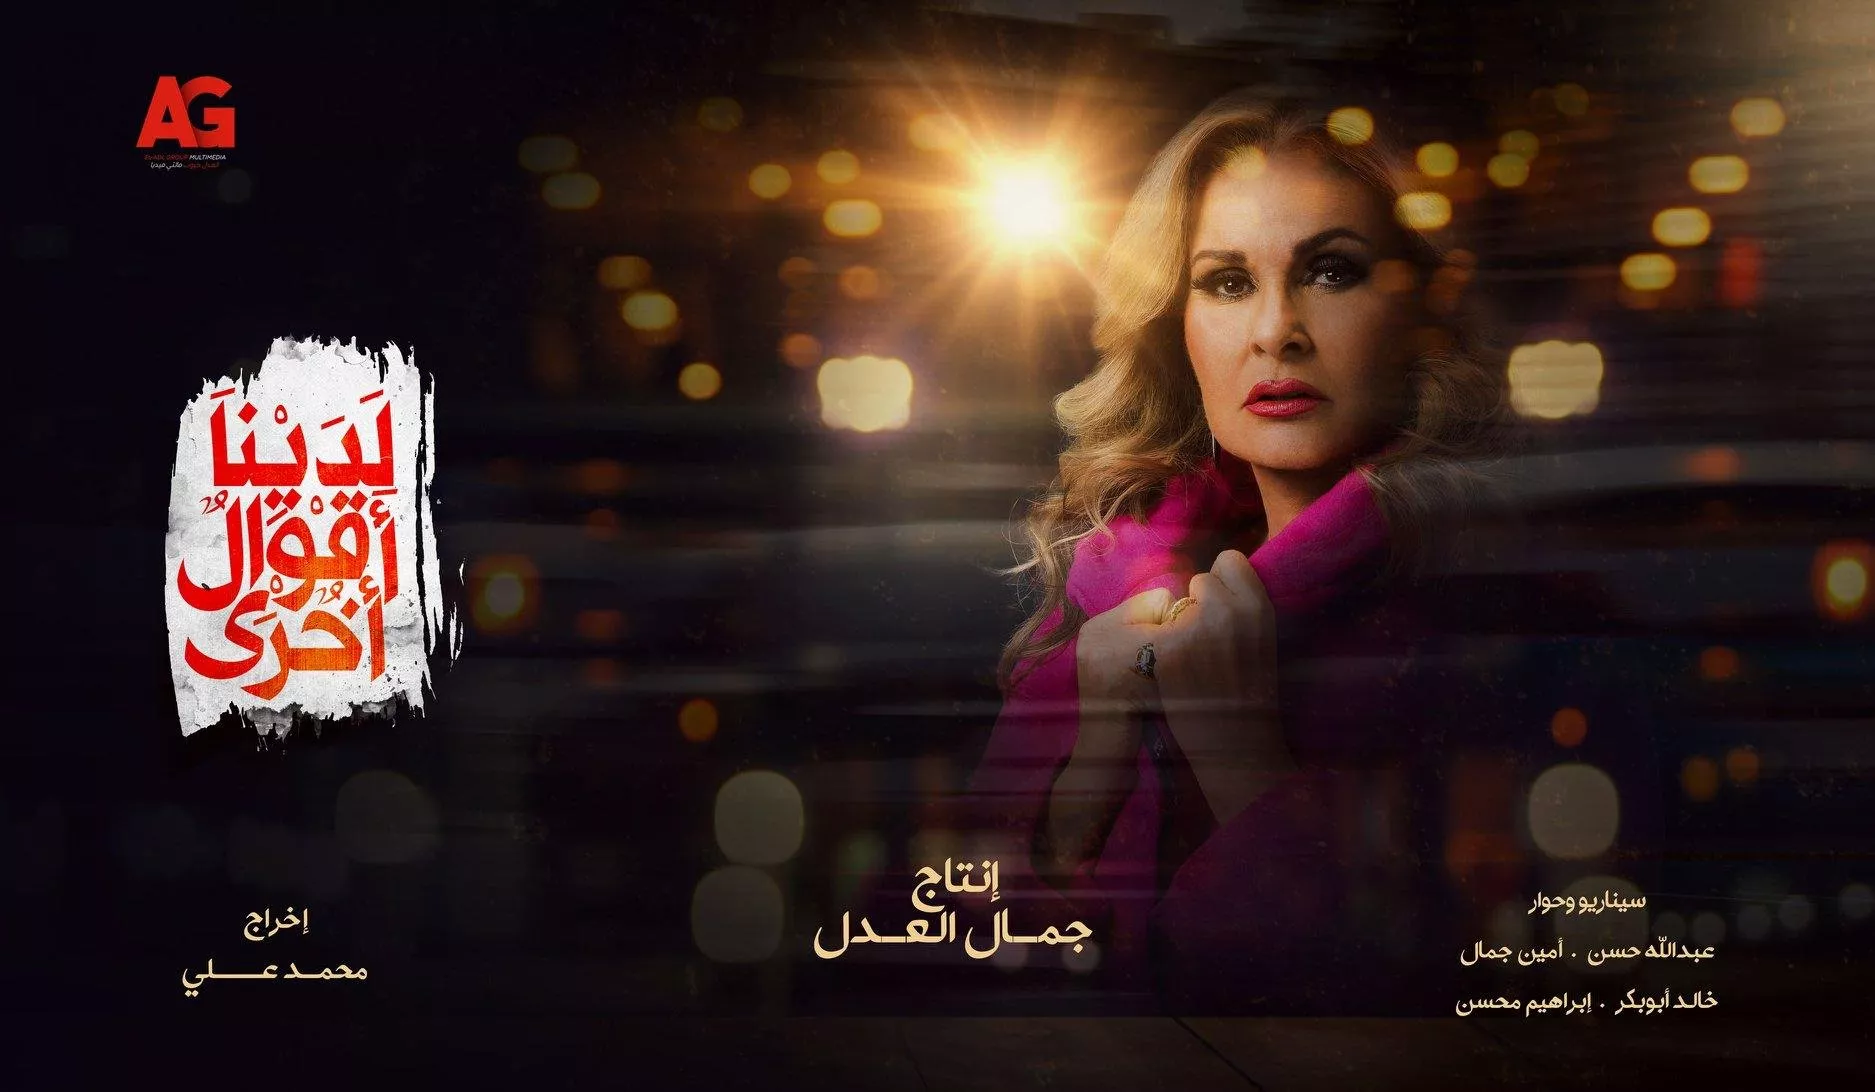 افضل المسلسلات العربية على نتفلكس... أي مسلسل لن تملّين من إعادة مشاهدته؟